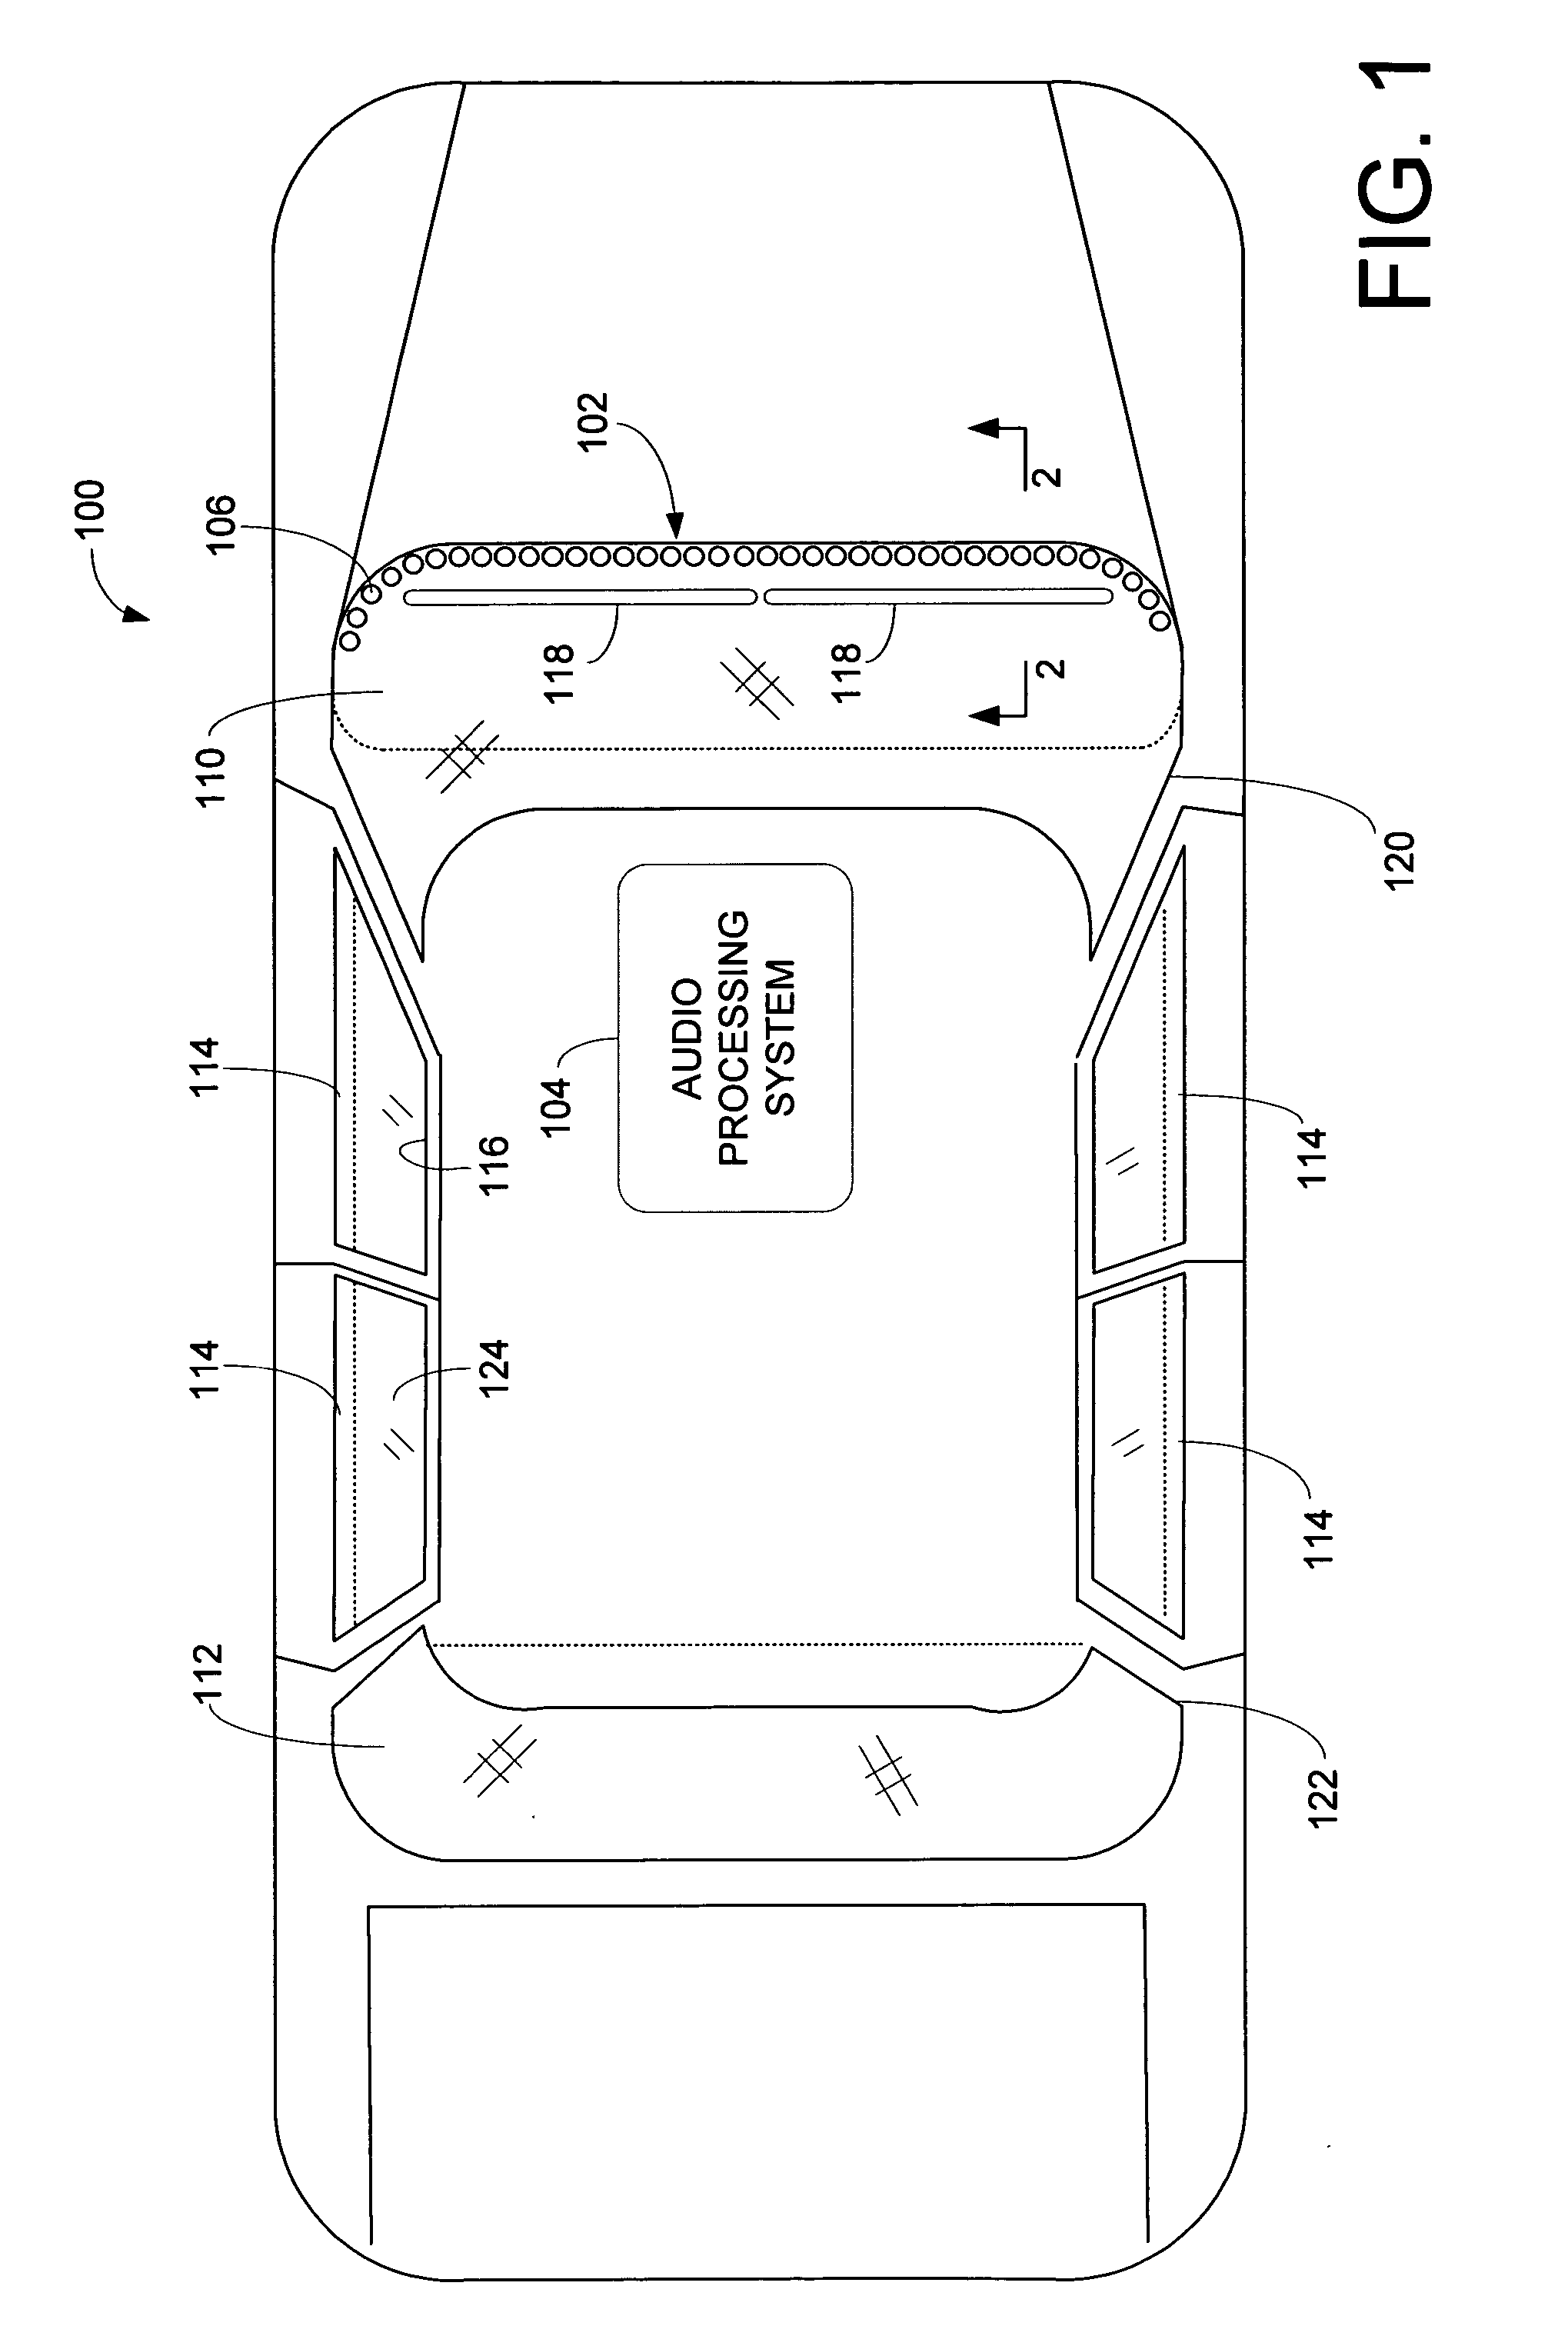 Vehicle loudspeaker array